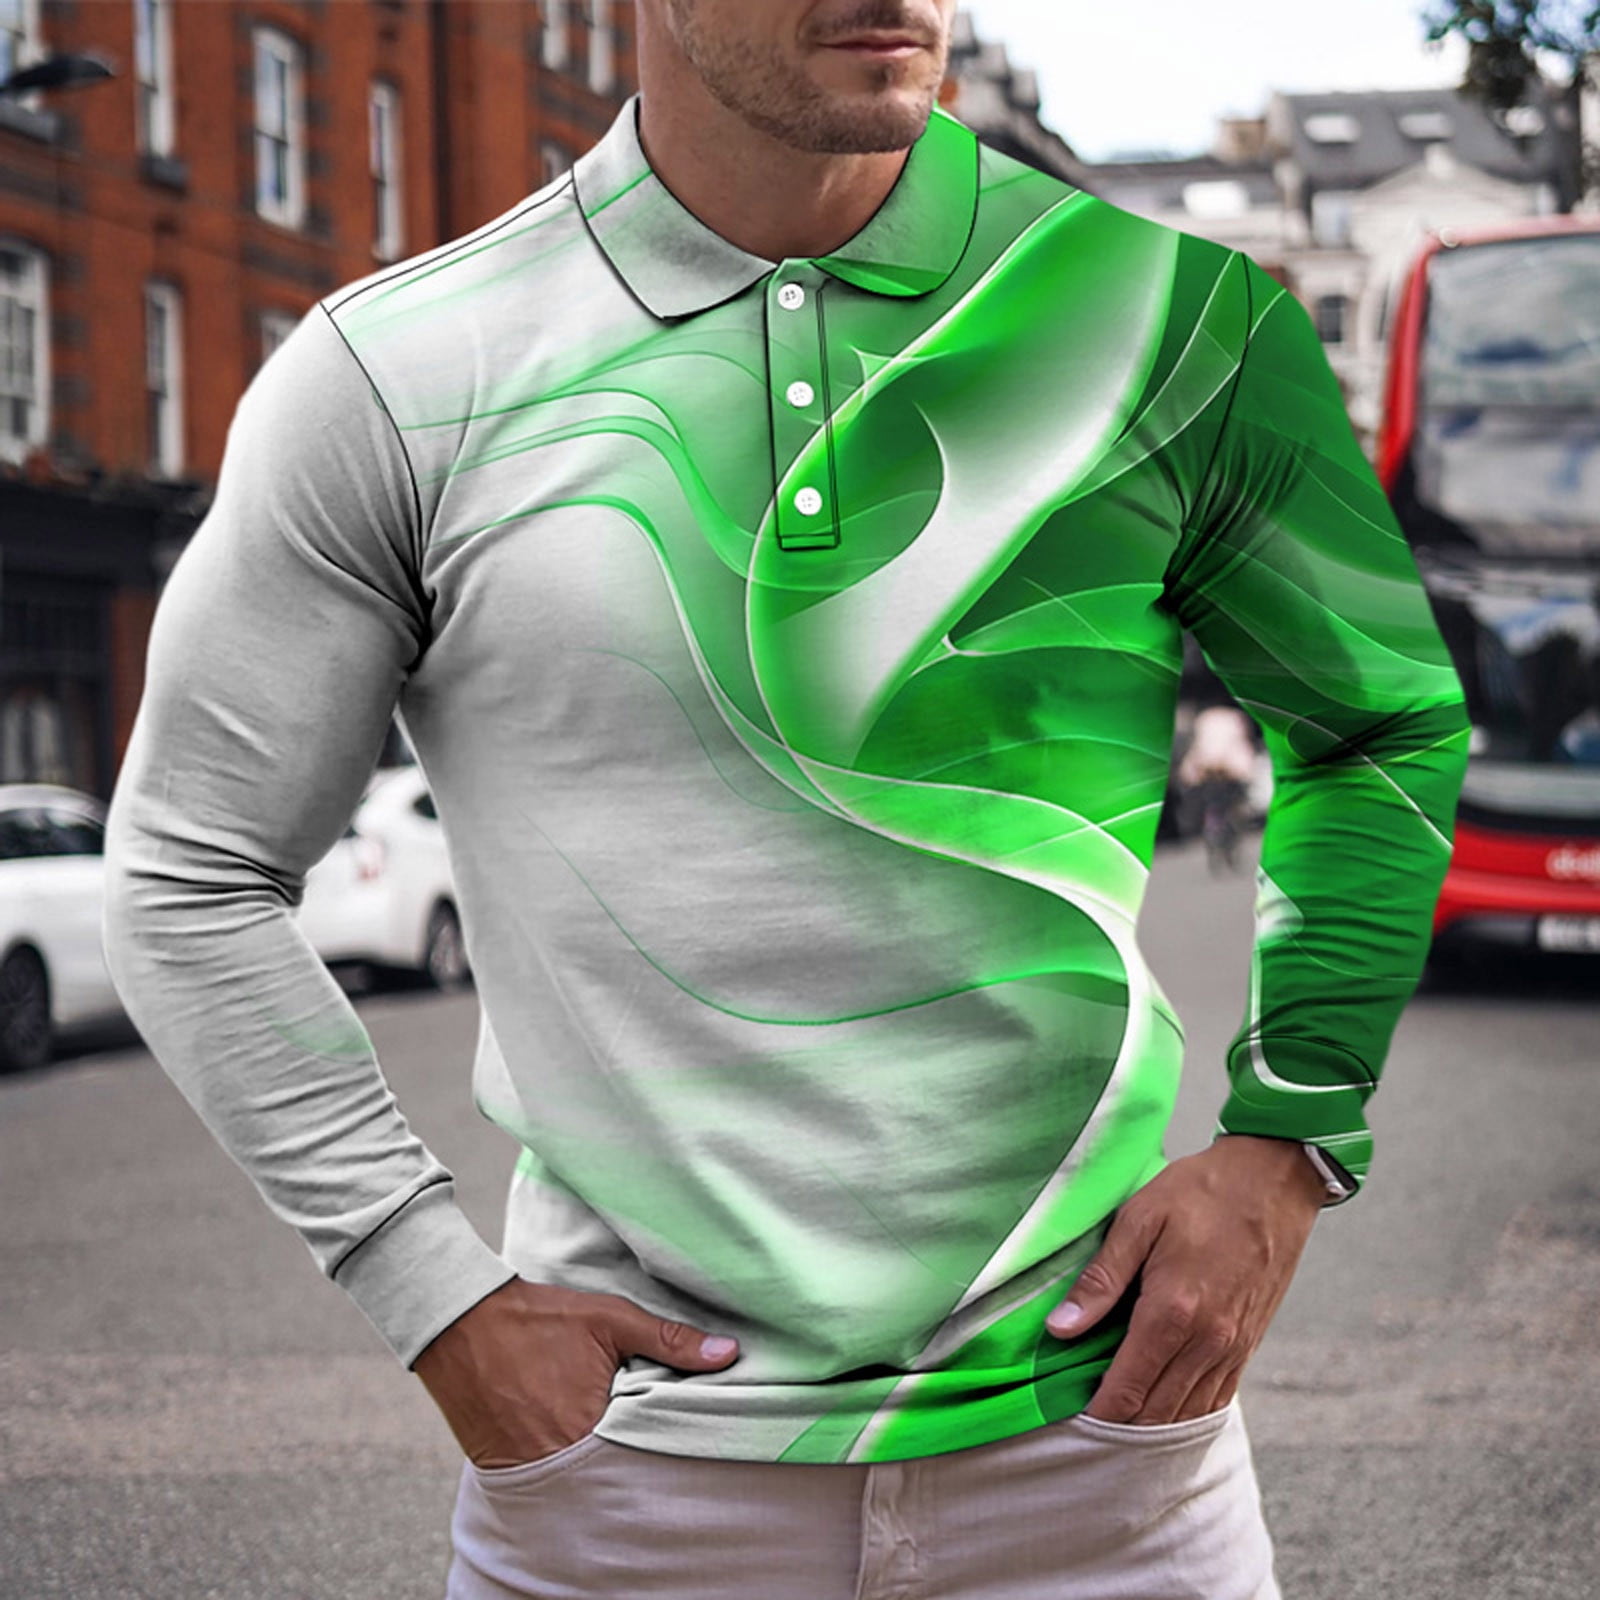 Men's Long Sleeve Fashion POLO Shirt Classic Zipper Casual Slim Shirts